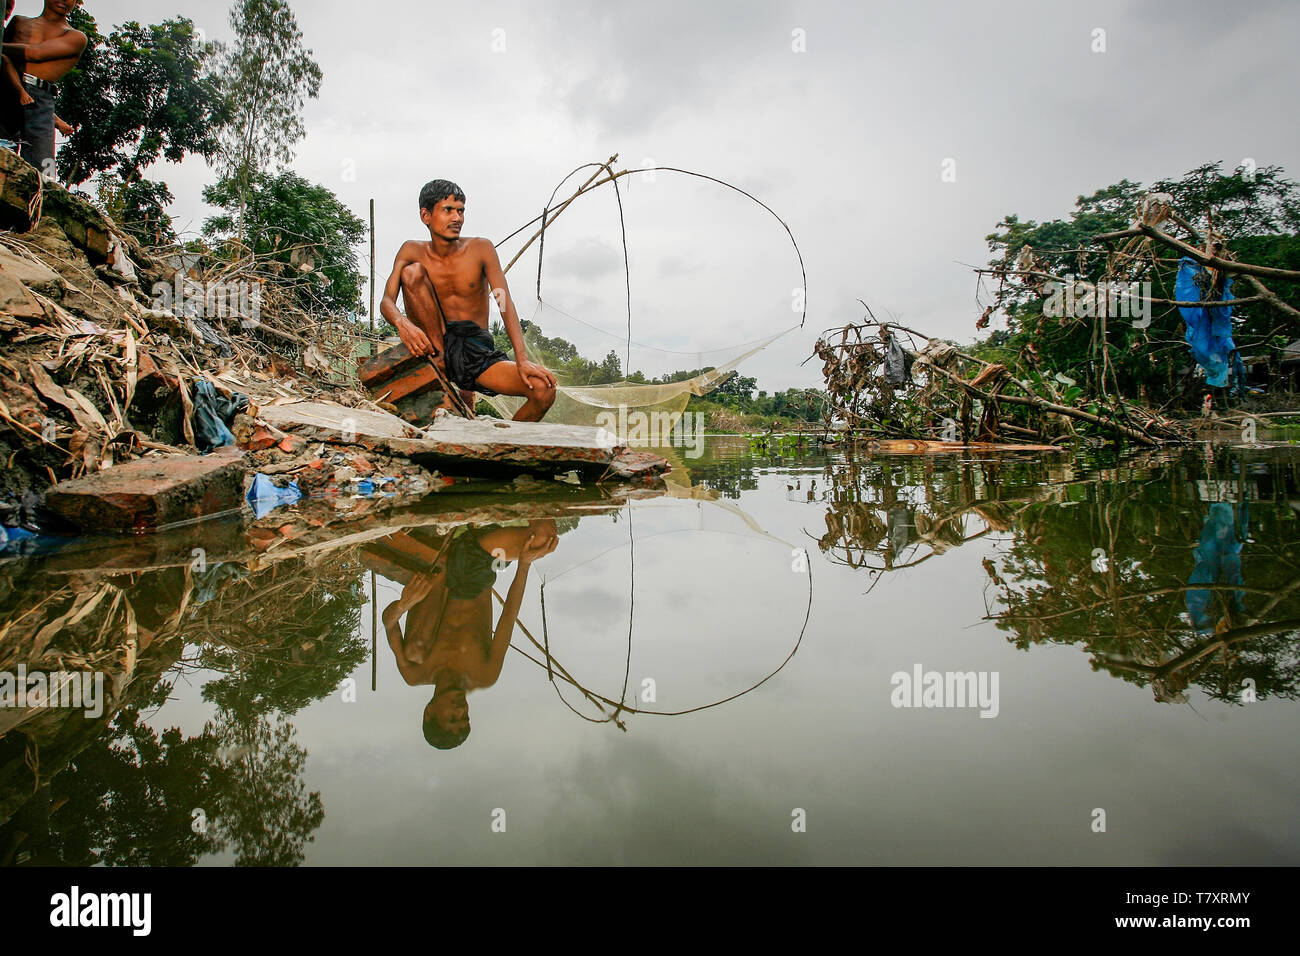 Mohammad Khokon sitzt neben Was verwendet das Haus seiner Familie zu sein. Eine grelle Flut gewaschen in den Yamuna Fluss in Sirajganj, Bangladesch im Jahr 2007. Die globale Erwärmung verursachen der Monsun Regen und Überschwemmungen früher zu starten. Die globale Erwärmung auch accellerate das Schmelzen von Eis und Schnee im Himalaya, die Feeds in den bereits gesättigten Flüsse, der Ganges Delta machen. Das Resultat ist verheerend für Menschen, die in den dicht besiedelten delta Bereich leben. Während der Himalaya und Überschwemmungen aus dem Norden wreak Verwüstung, der Anstieg des Meeresspiegels Salzwasser eindringen in die geringe Ursache liegenden landwirtschaftlichen Zonen entlang. Stockfoto